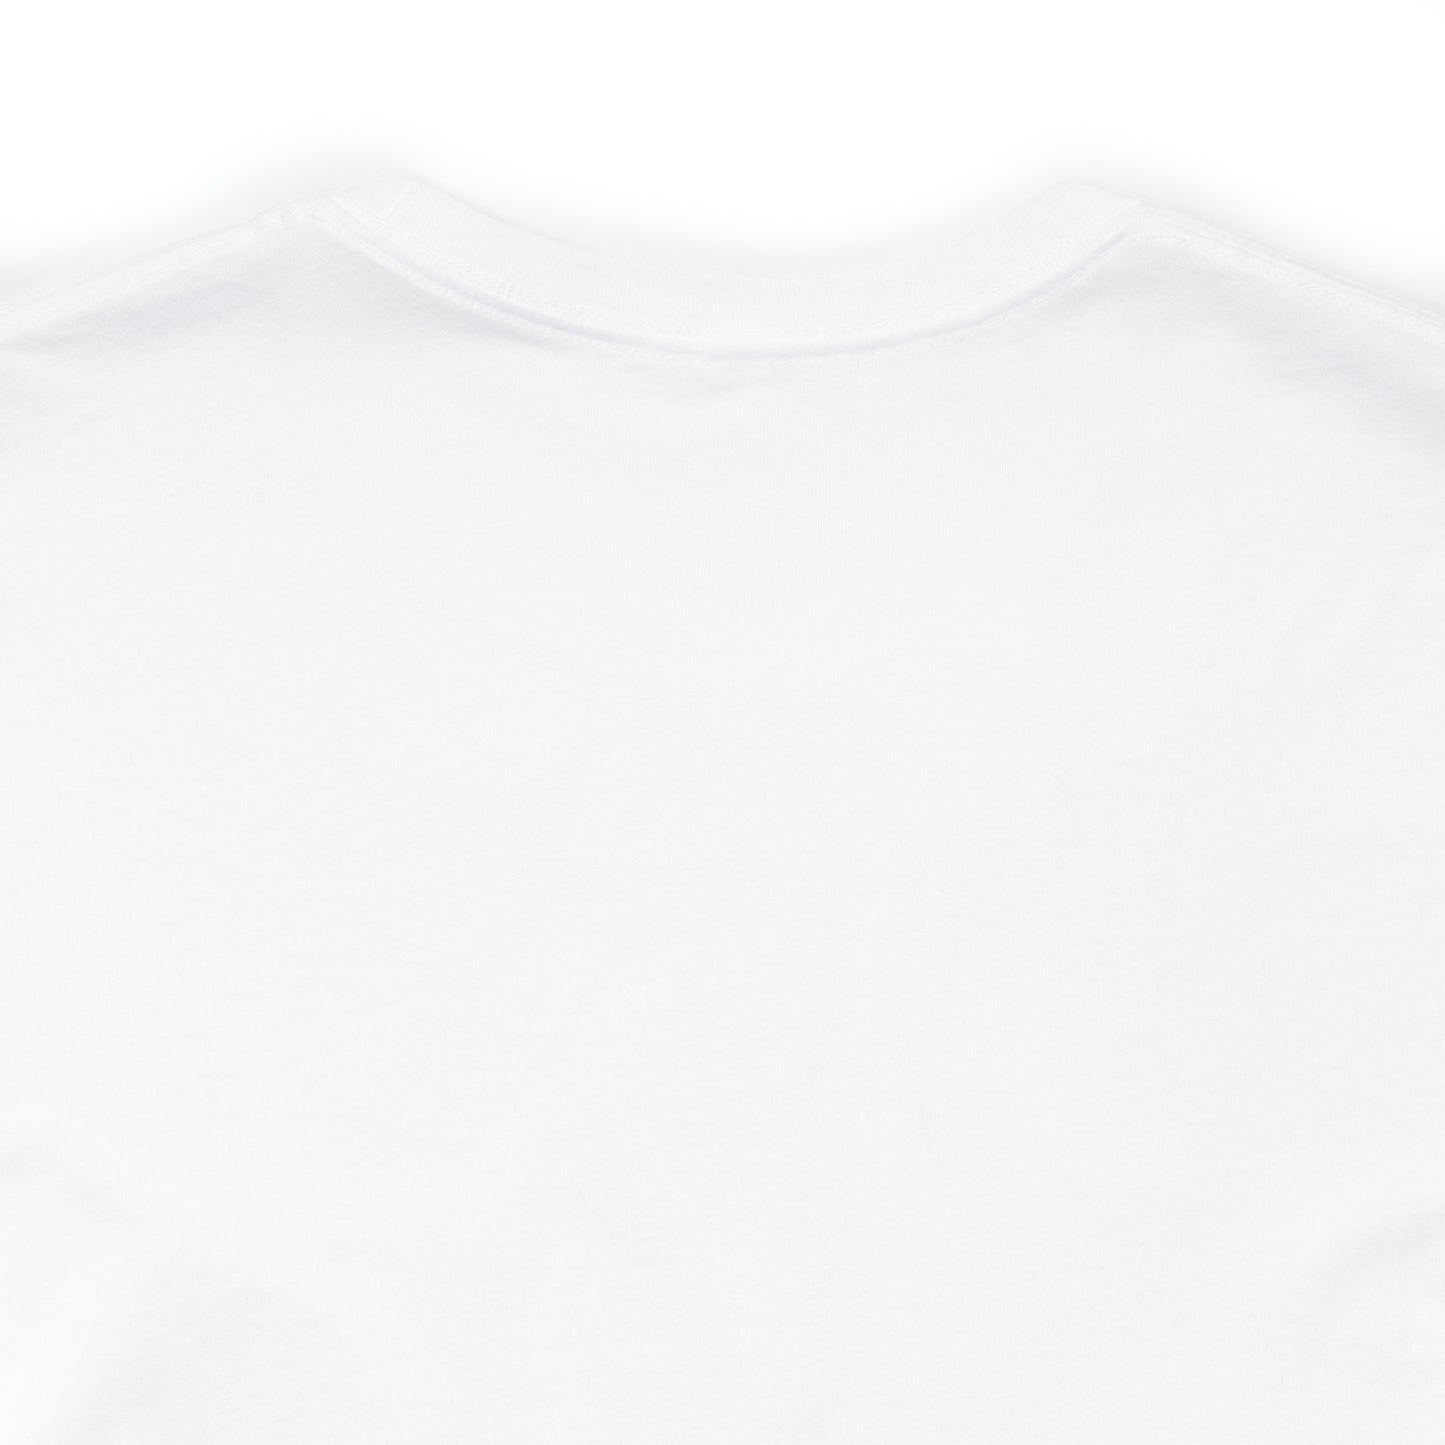 Just Chill - Lemonade Gentleman Pop Art - White Premium T-shirt